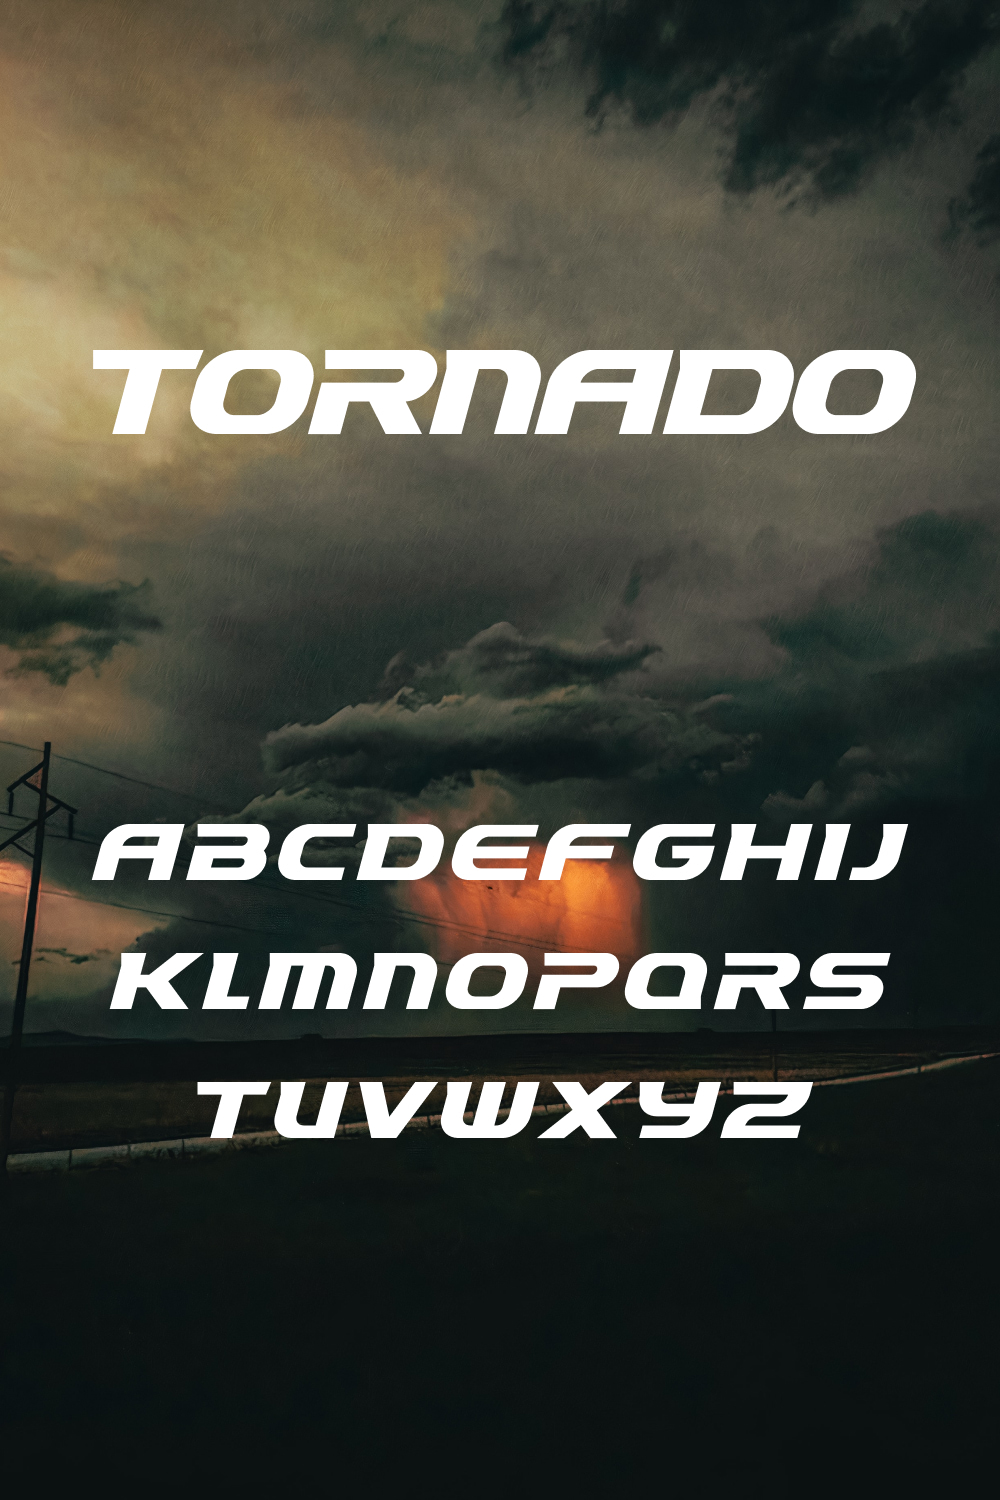 Tornado font of pinterest.